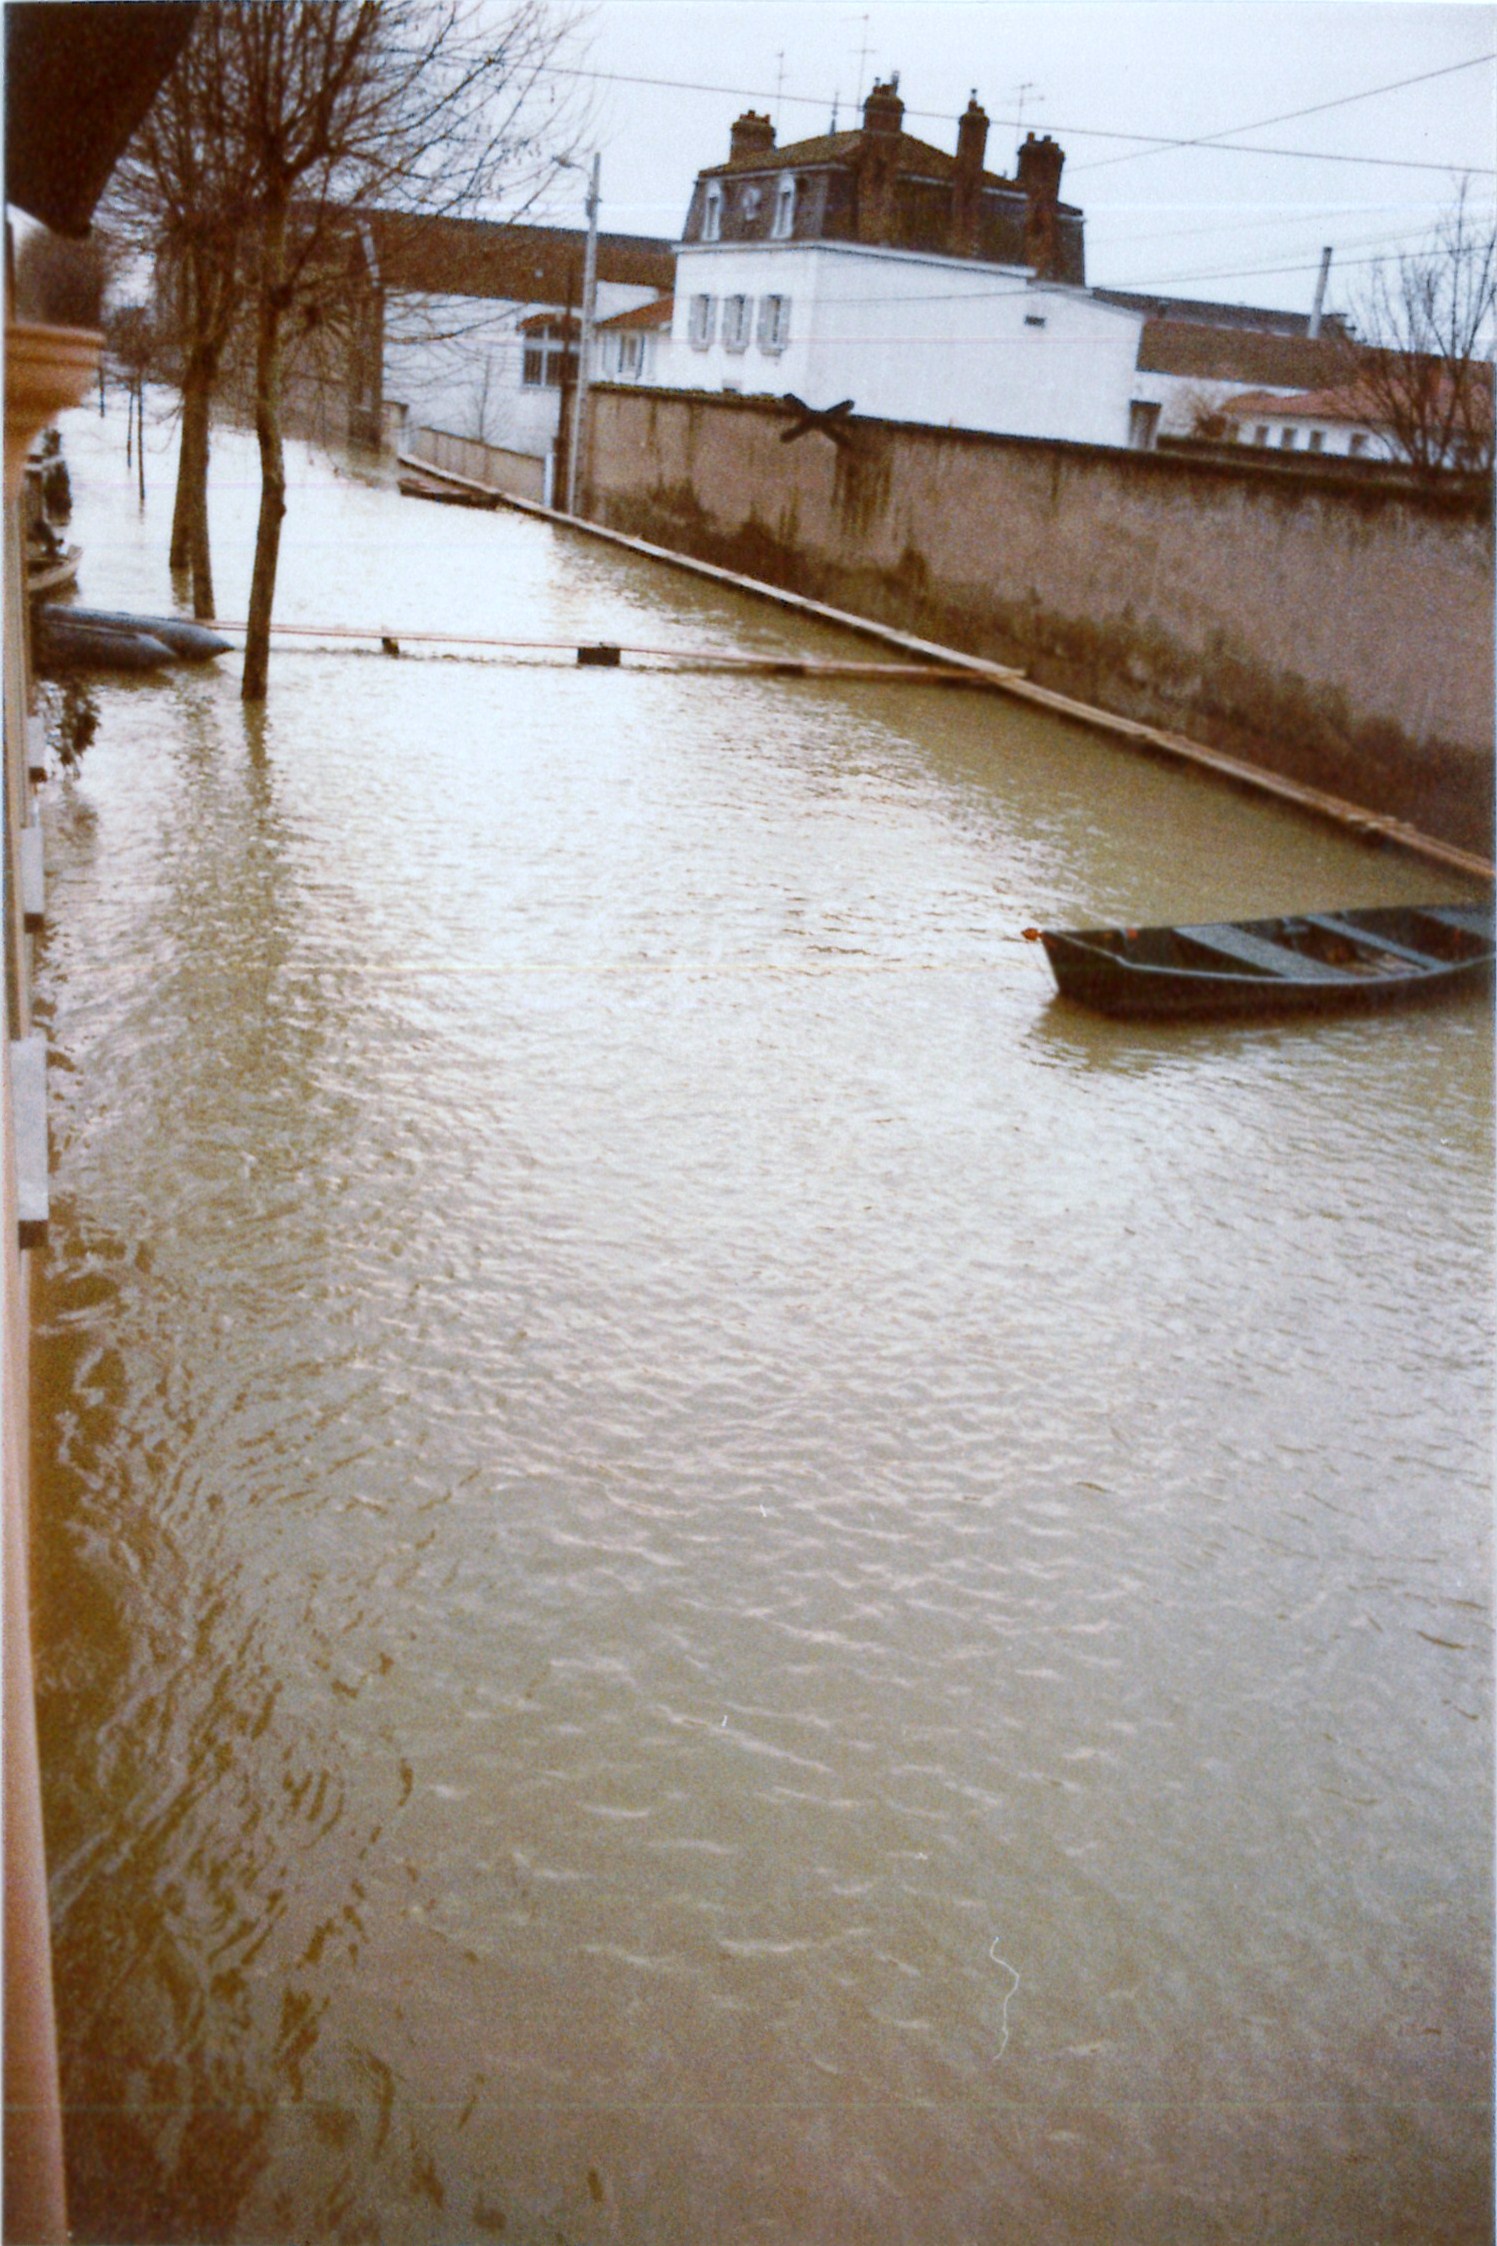 Crue de la Saône en 1981 à Mâcon